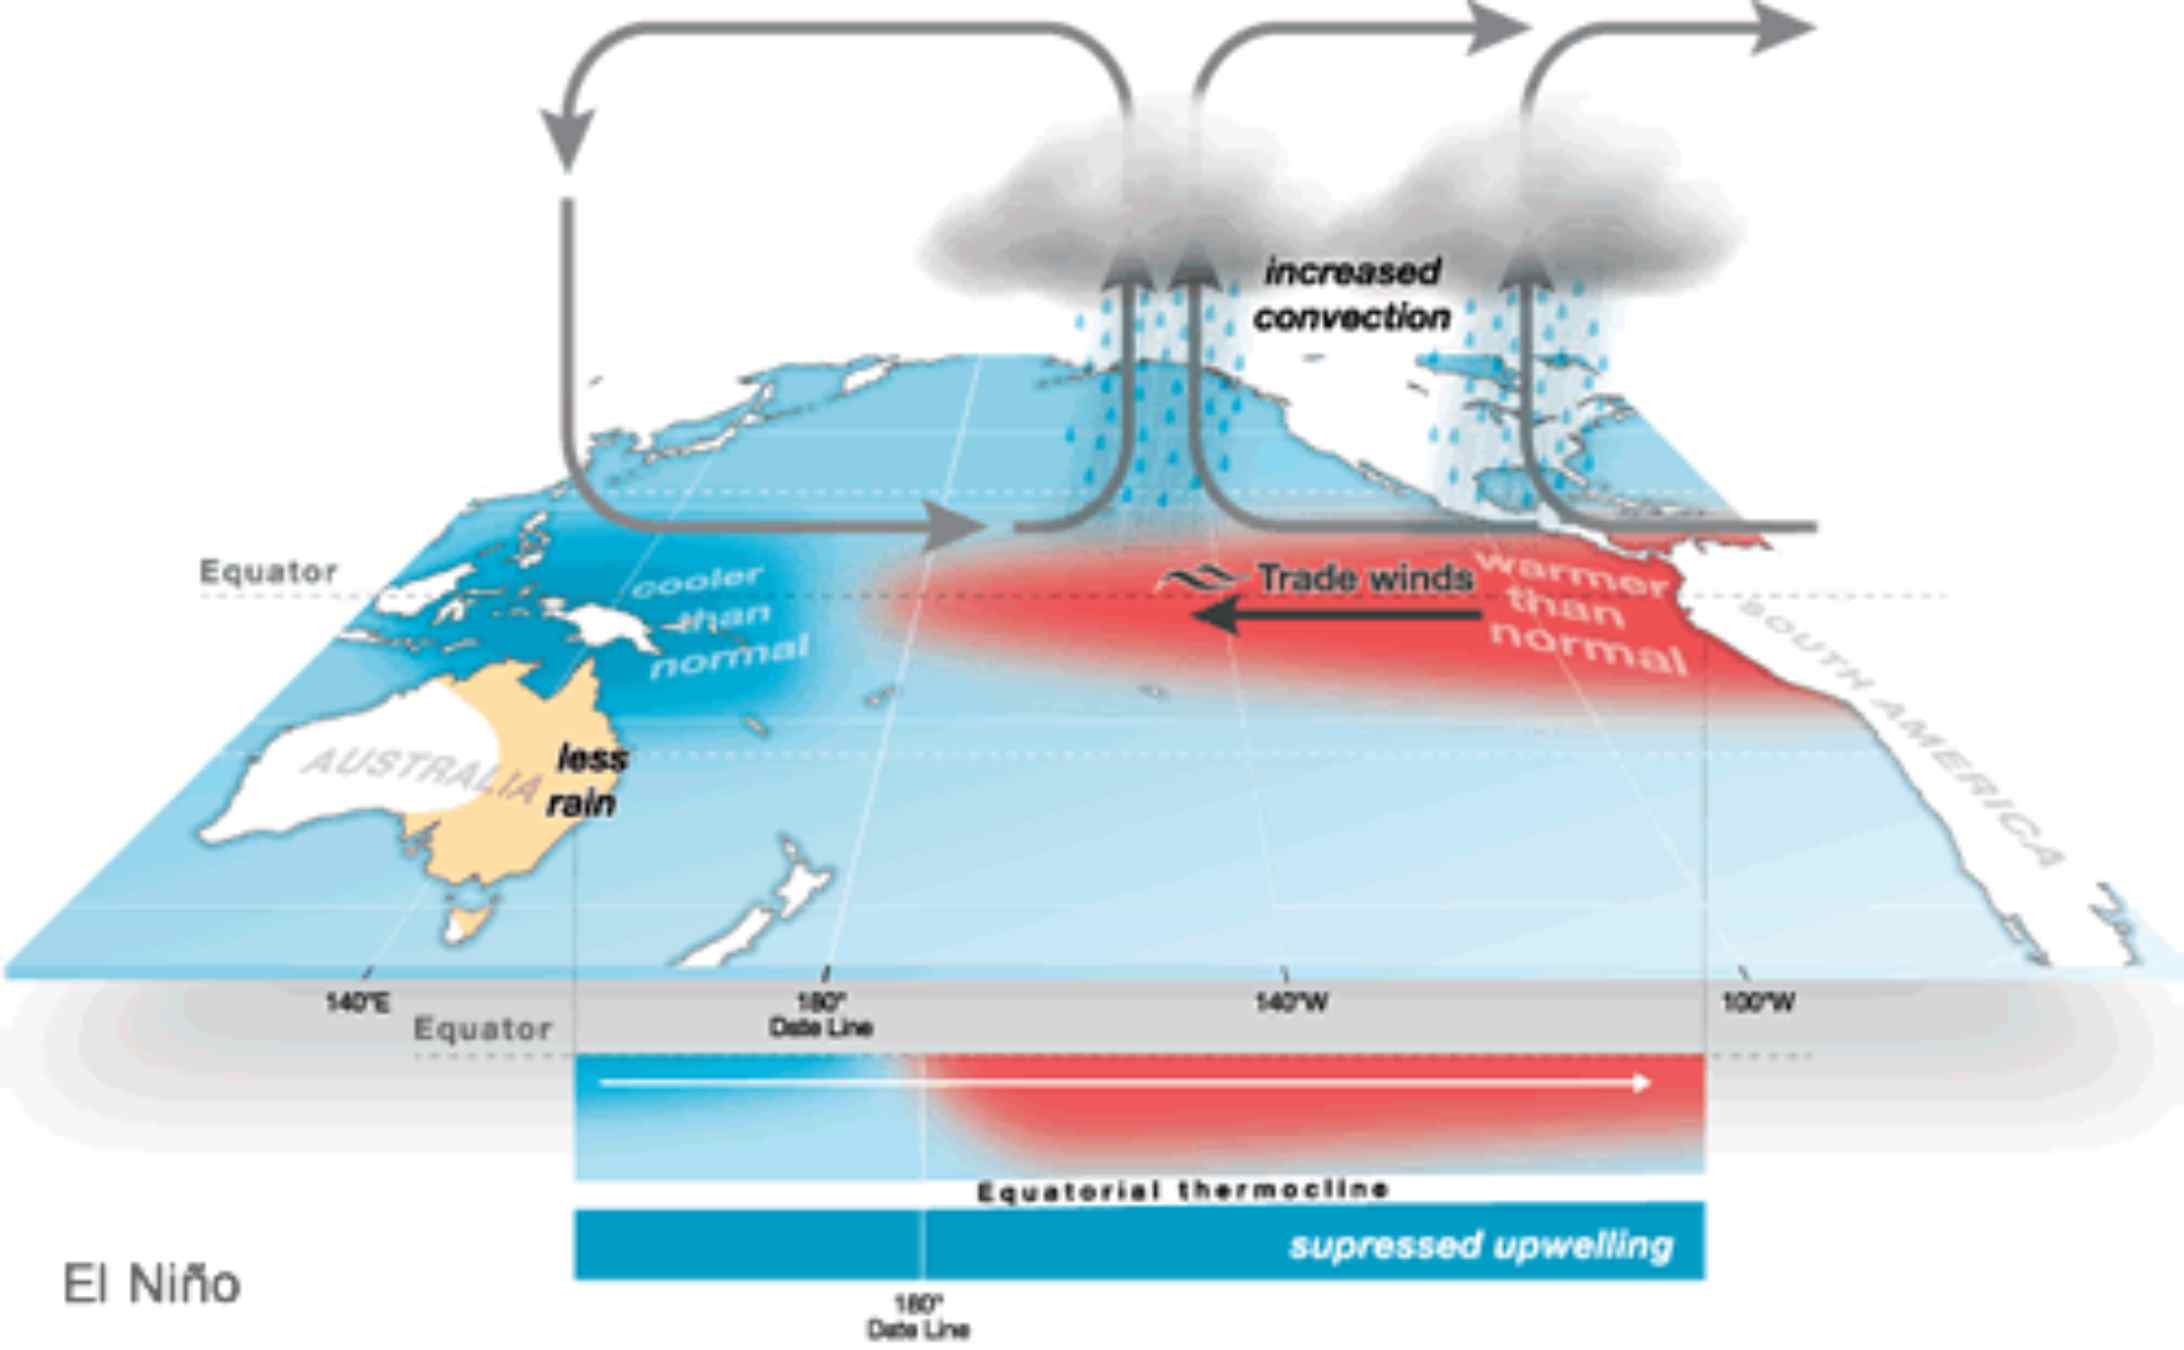 El Niño provoca sequías e inundaciones atípicas / Bureau of Meteorology - Australia Governement